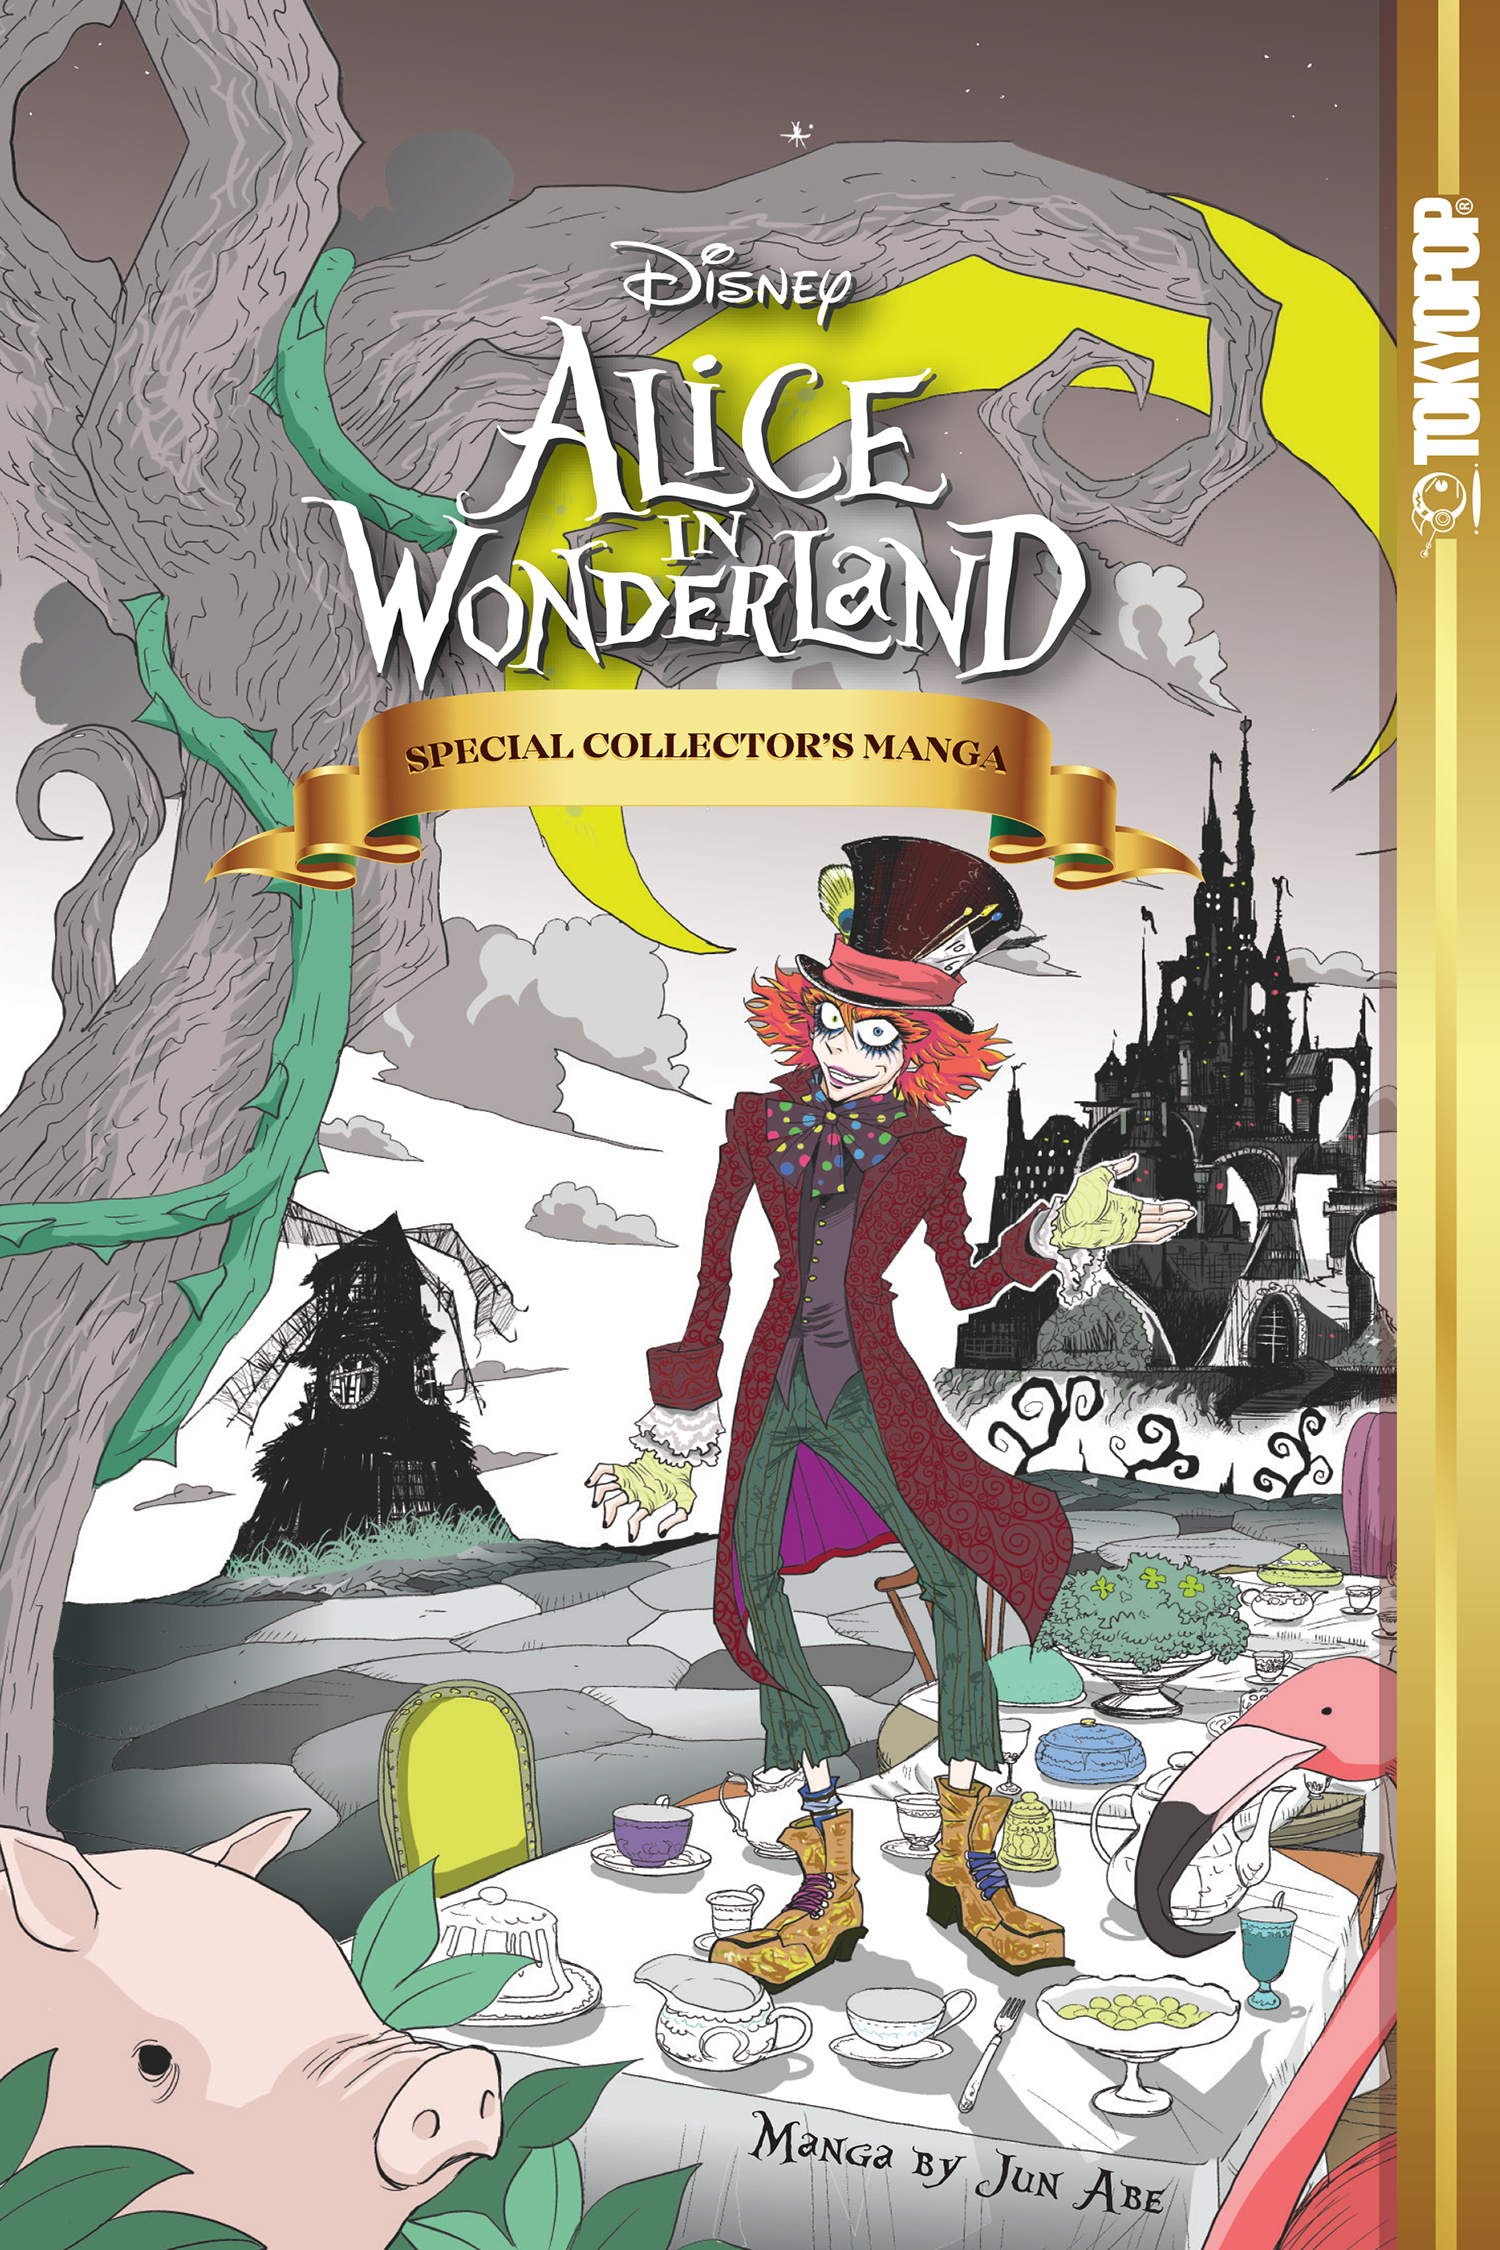 Disney Alice in Wonderland: Special Collector's Edition